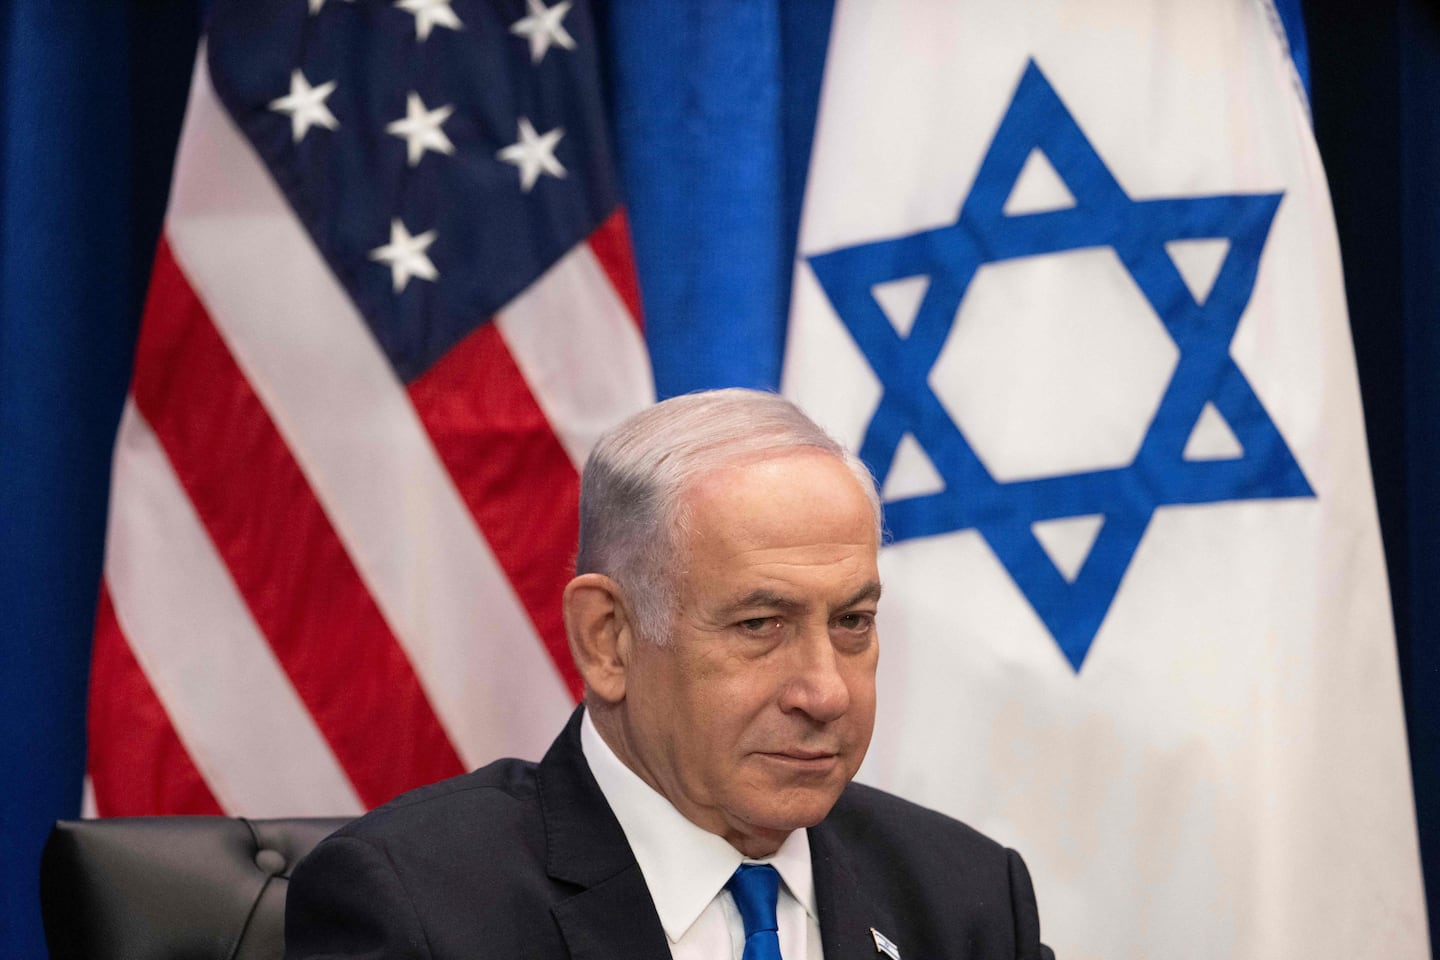 benjamin-netanyahu-pronuncia-discurso-ante-congreso-de-estados-unidos-en-medio-de-tensiones